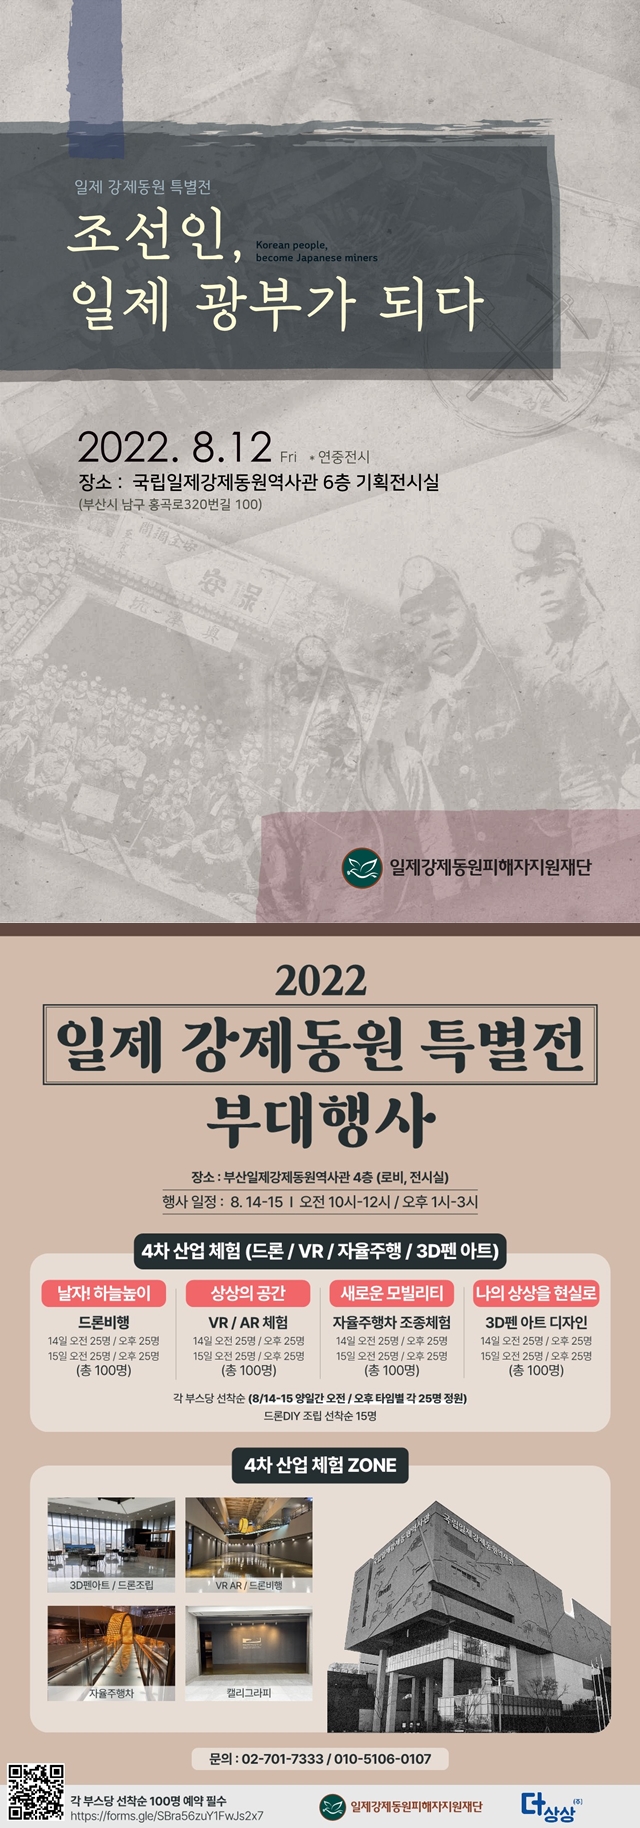 2022년 일제 강제동원 특별전 및 부대행사 홍보0